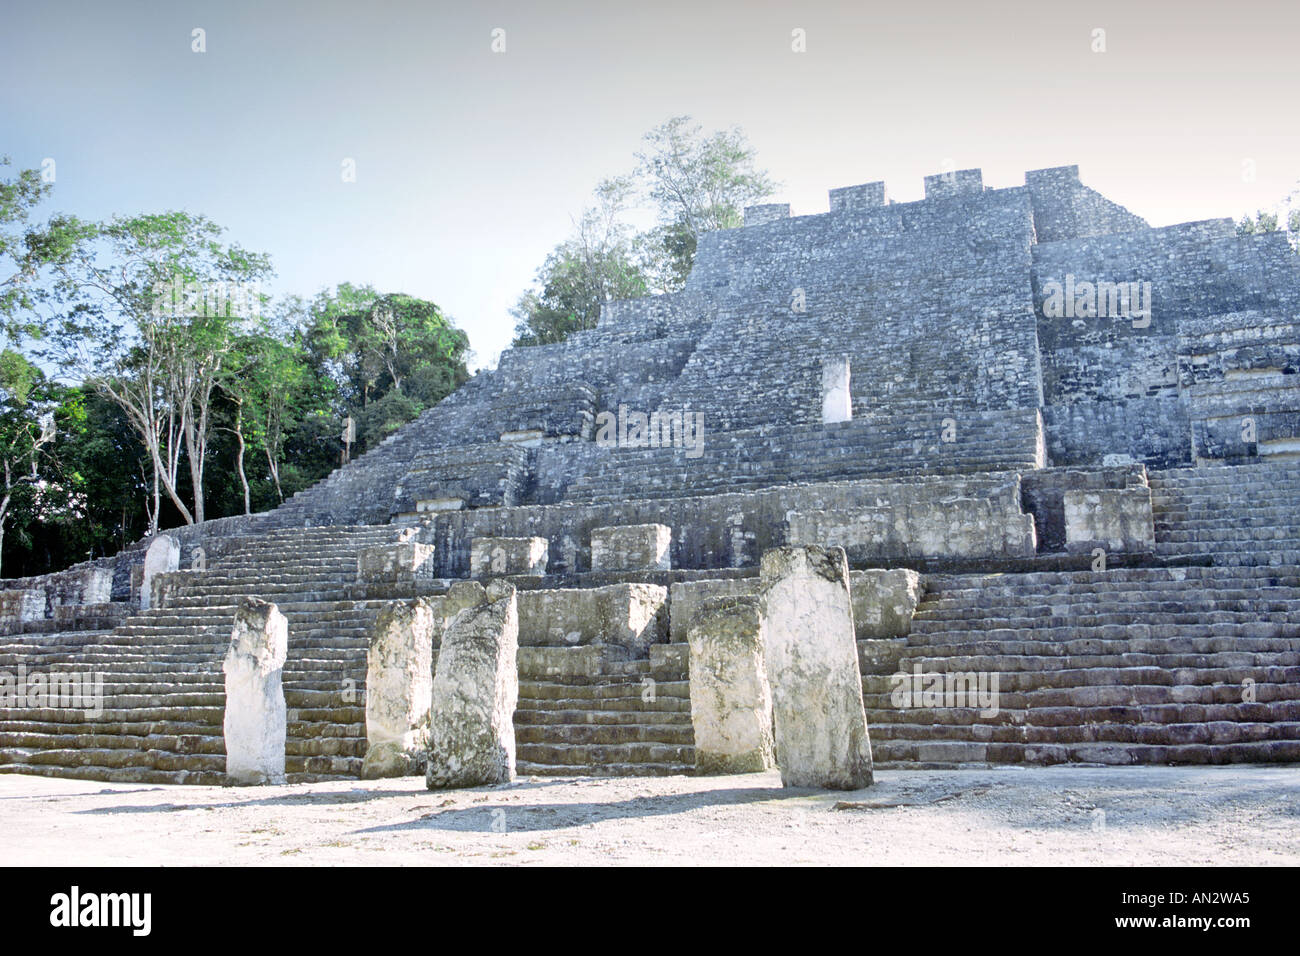 Les ruines mayas de Calakmul dans la Réserve de biosphère de Calakmul dans l'État de Campeche au Mexique. Banque D'Images